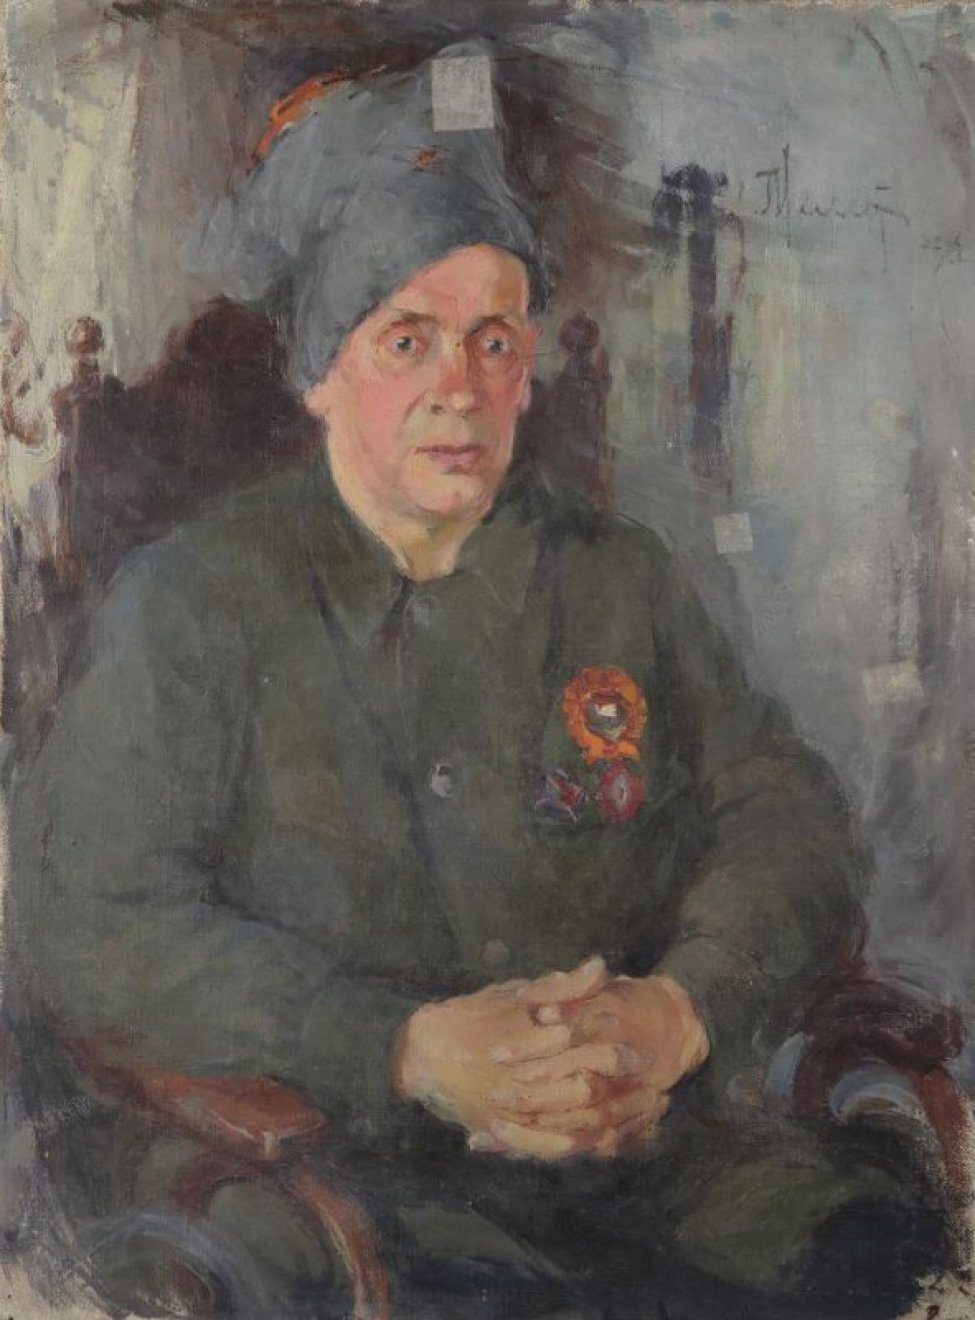 Изображен сидящий Окулов в военном костюме, с орденом на груди, в барашковой шапке. Окулов сидит в кресле. Красное лицо обращено к зрителю.